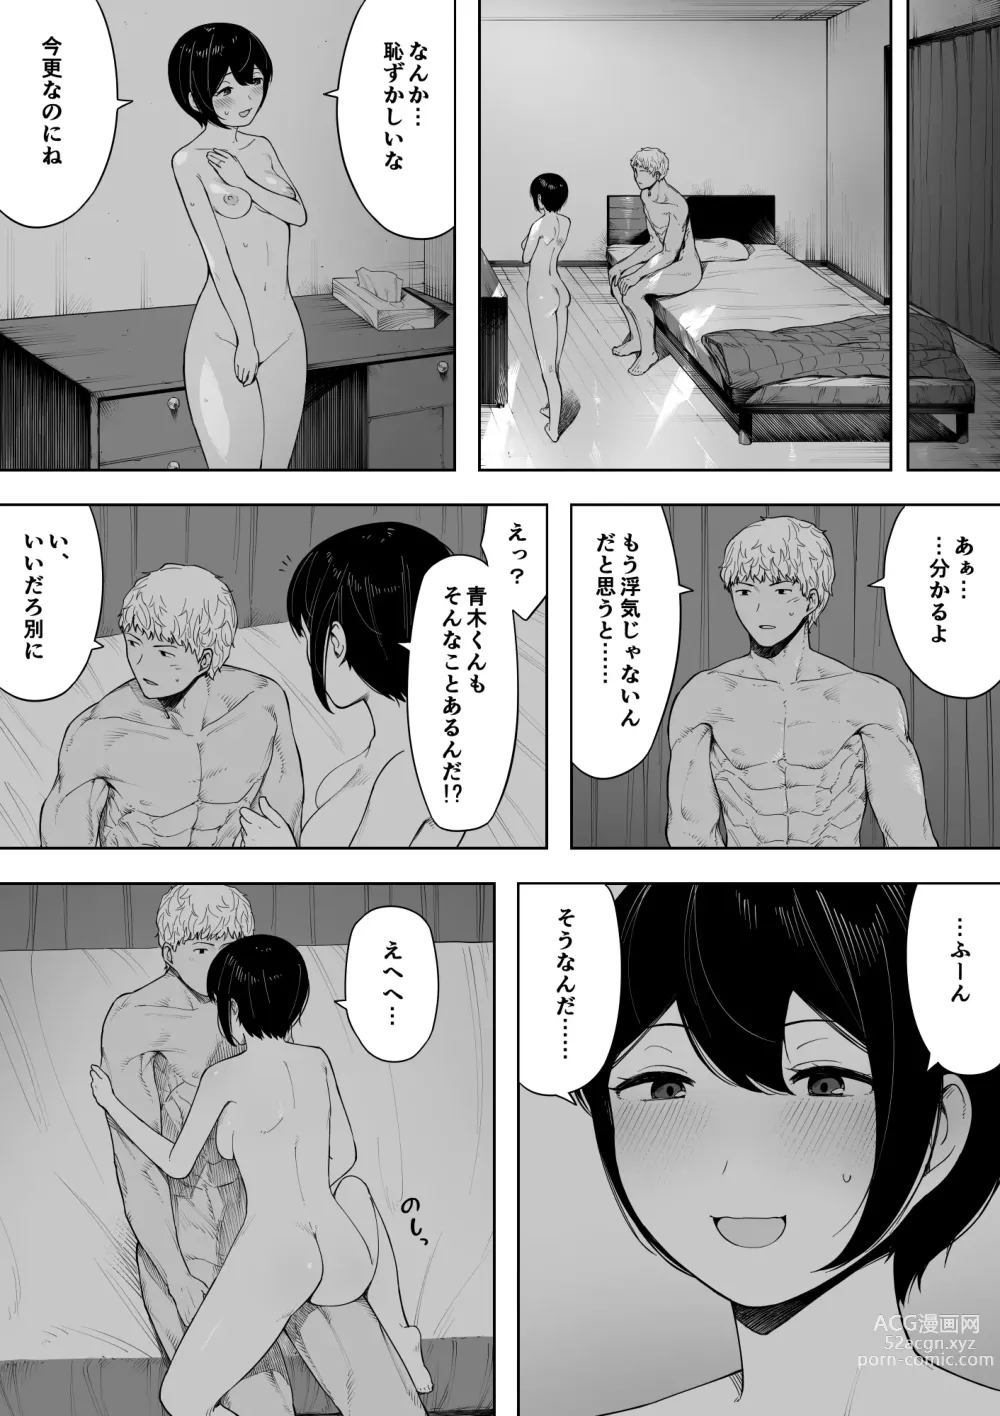 Page 52 of doujinshi Aisai, Doui no Ue, Netorare 3 ~Ogawa-ke no Baai~